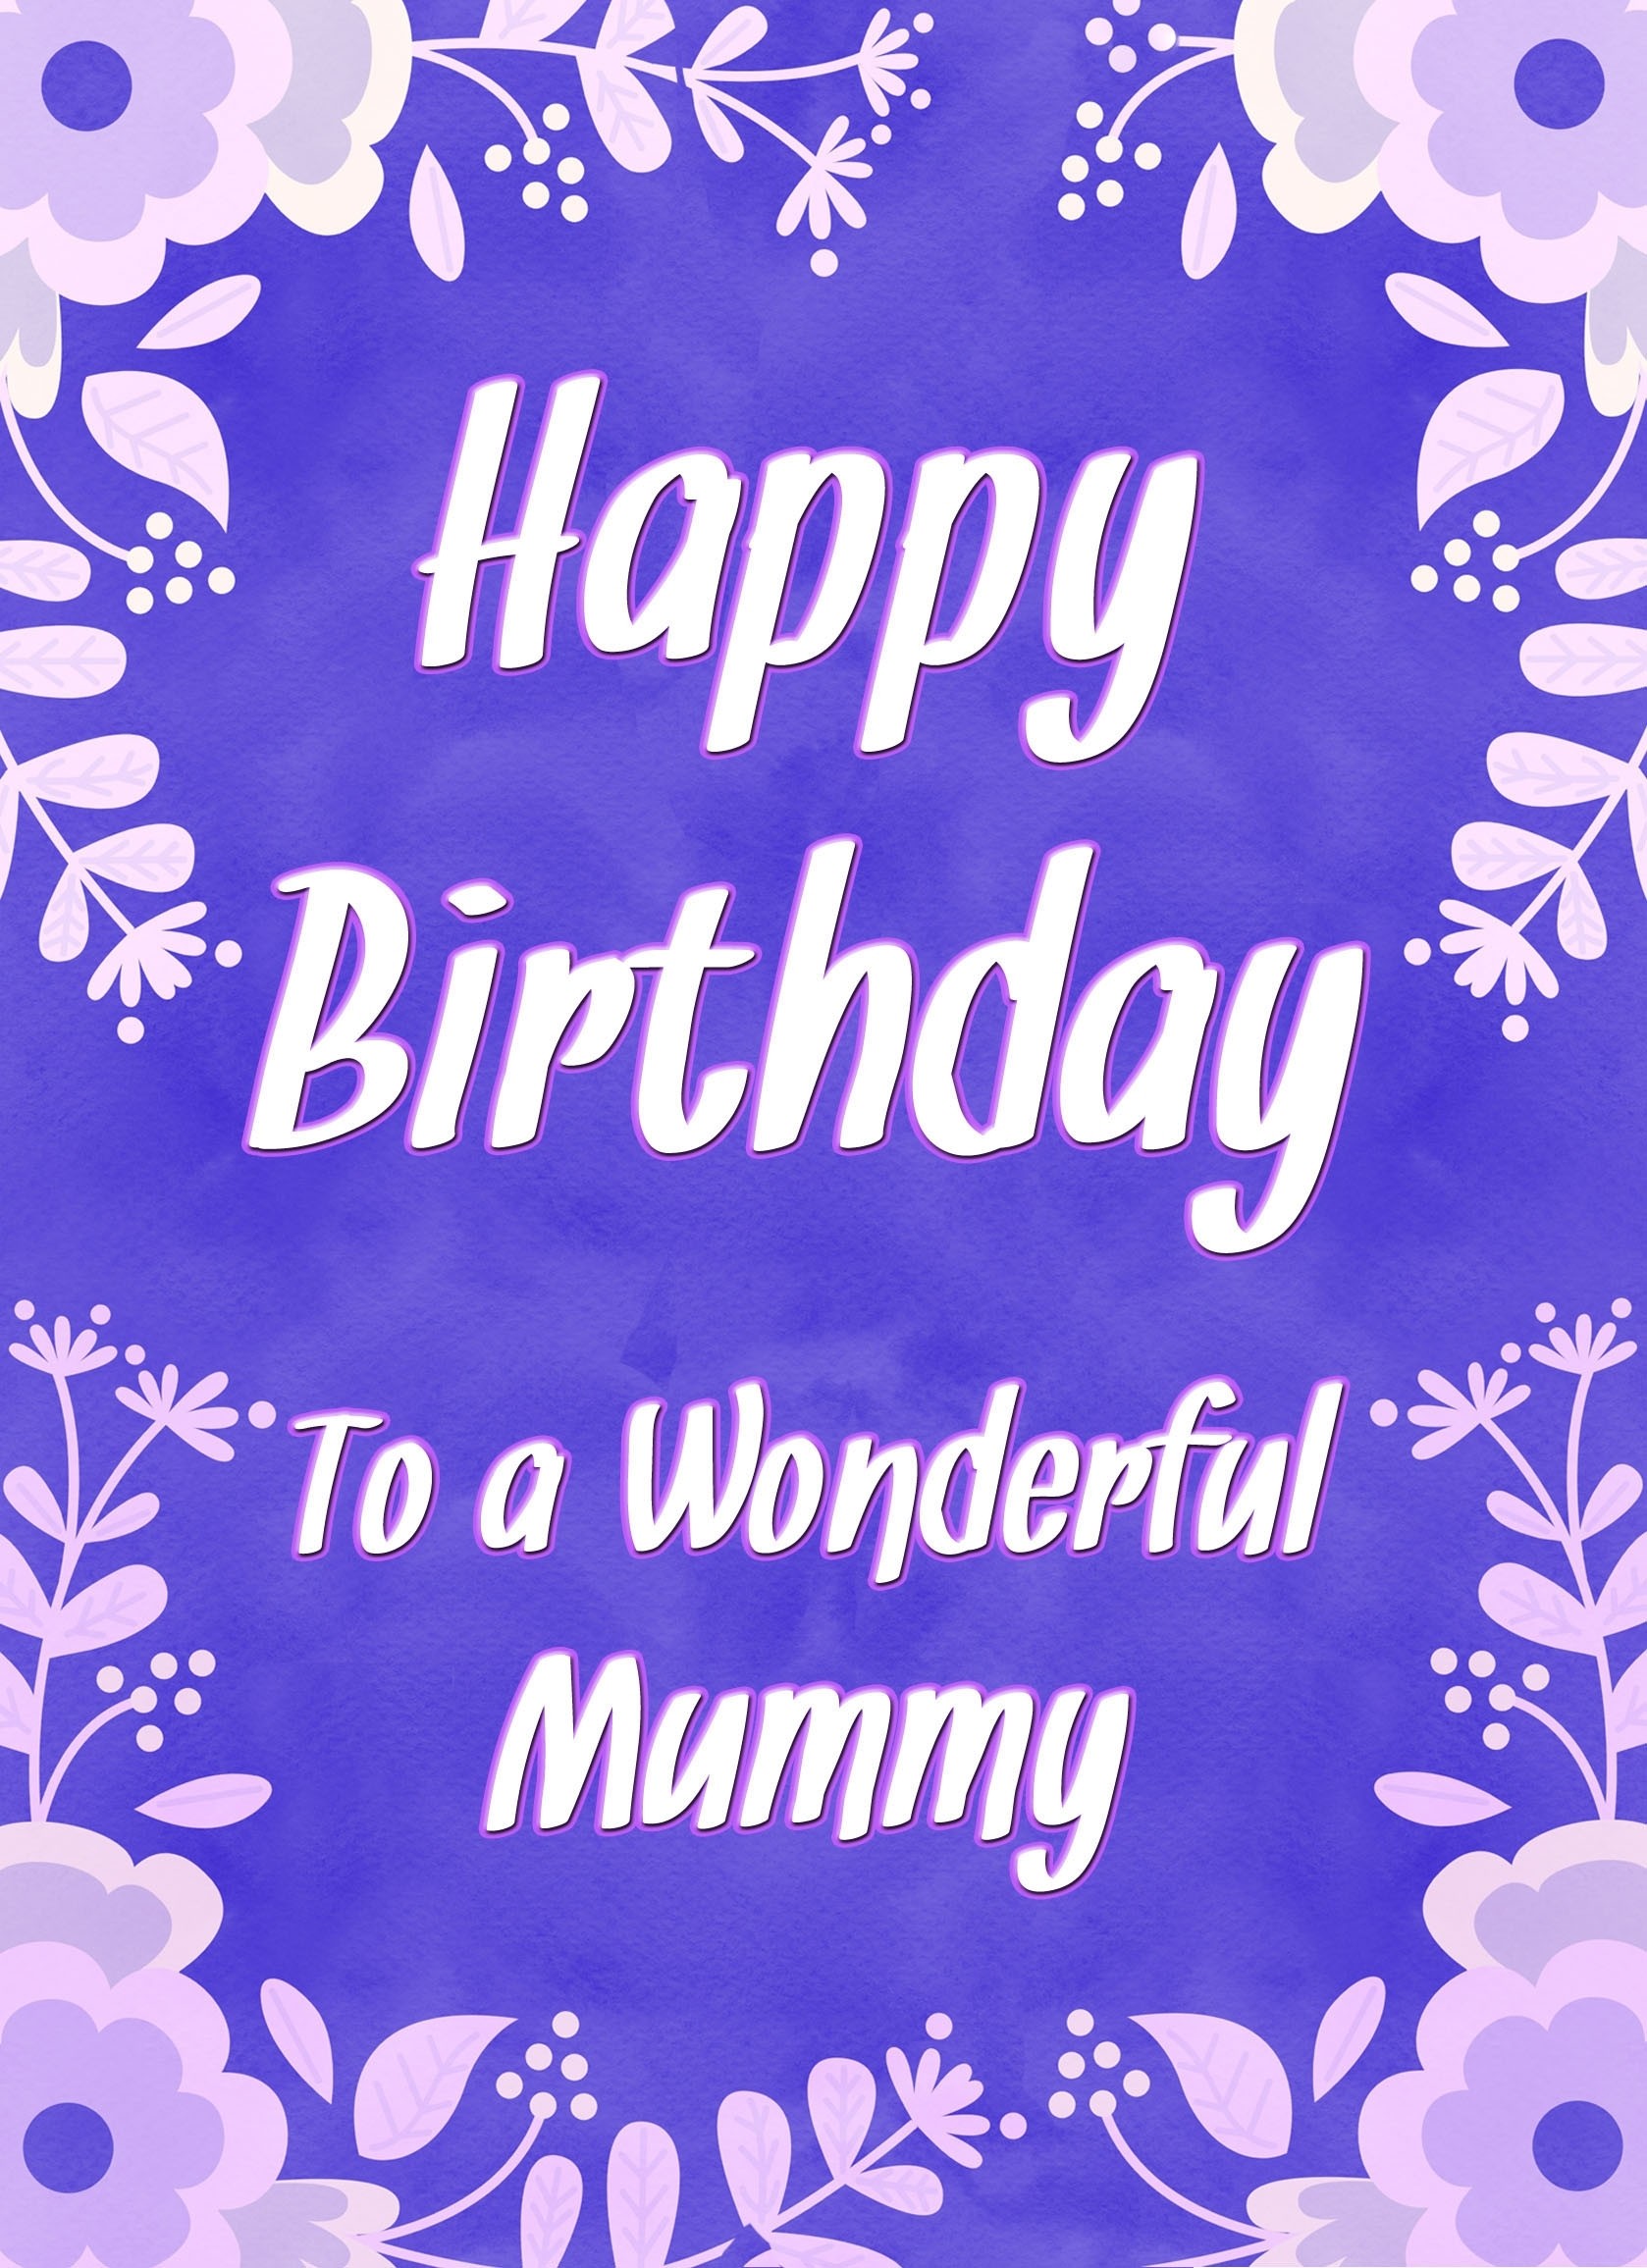 Birthday Card For Wonderful Mummy (Purple Border)